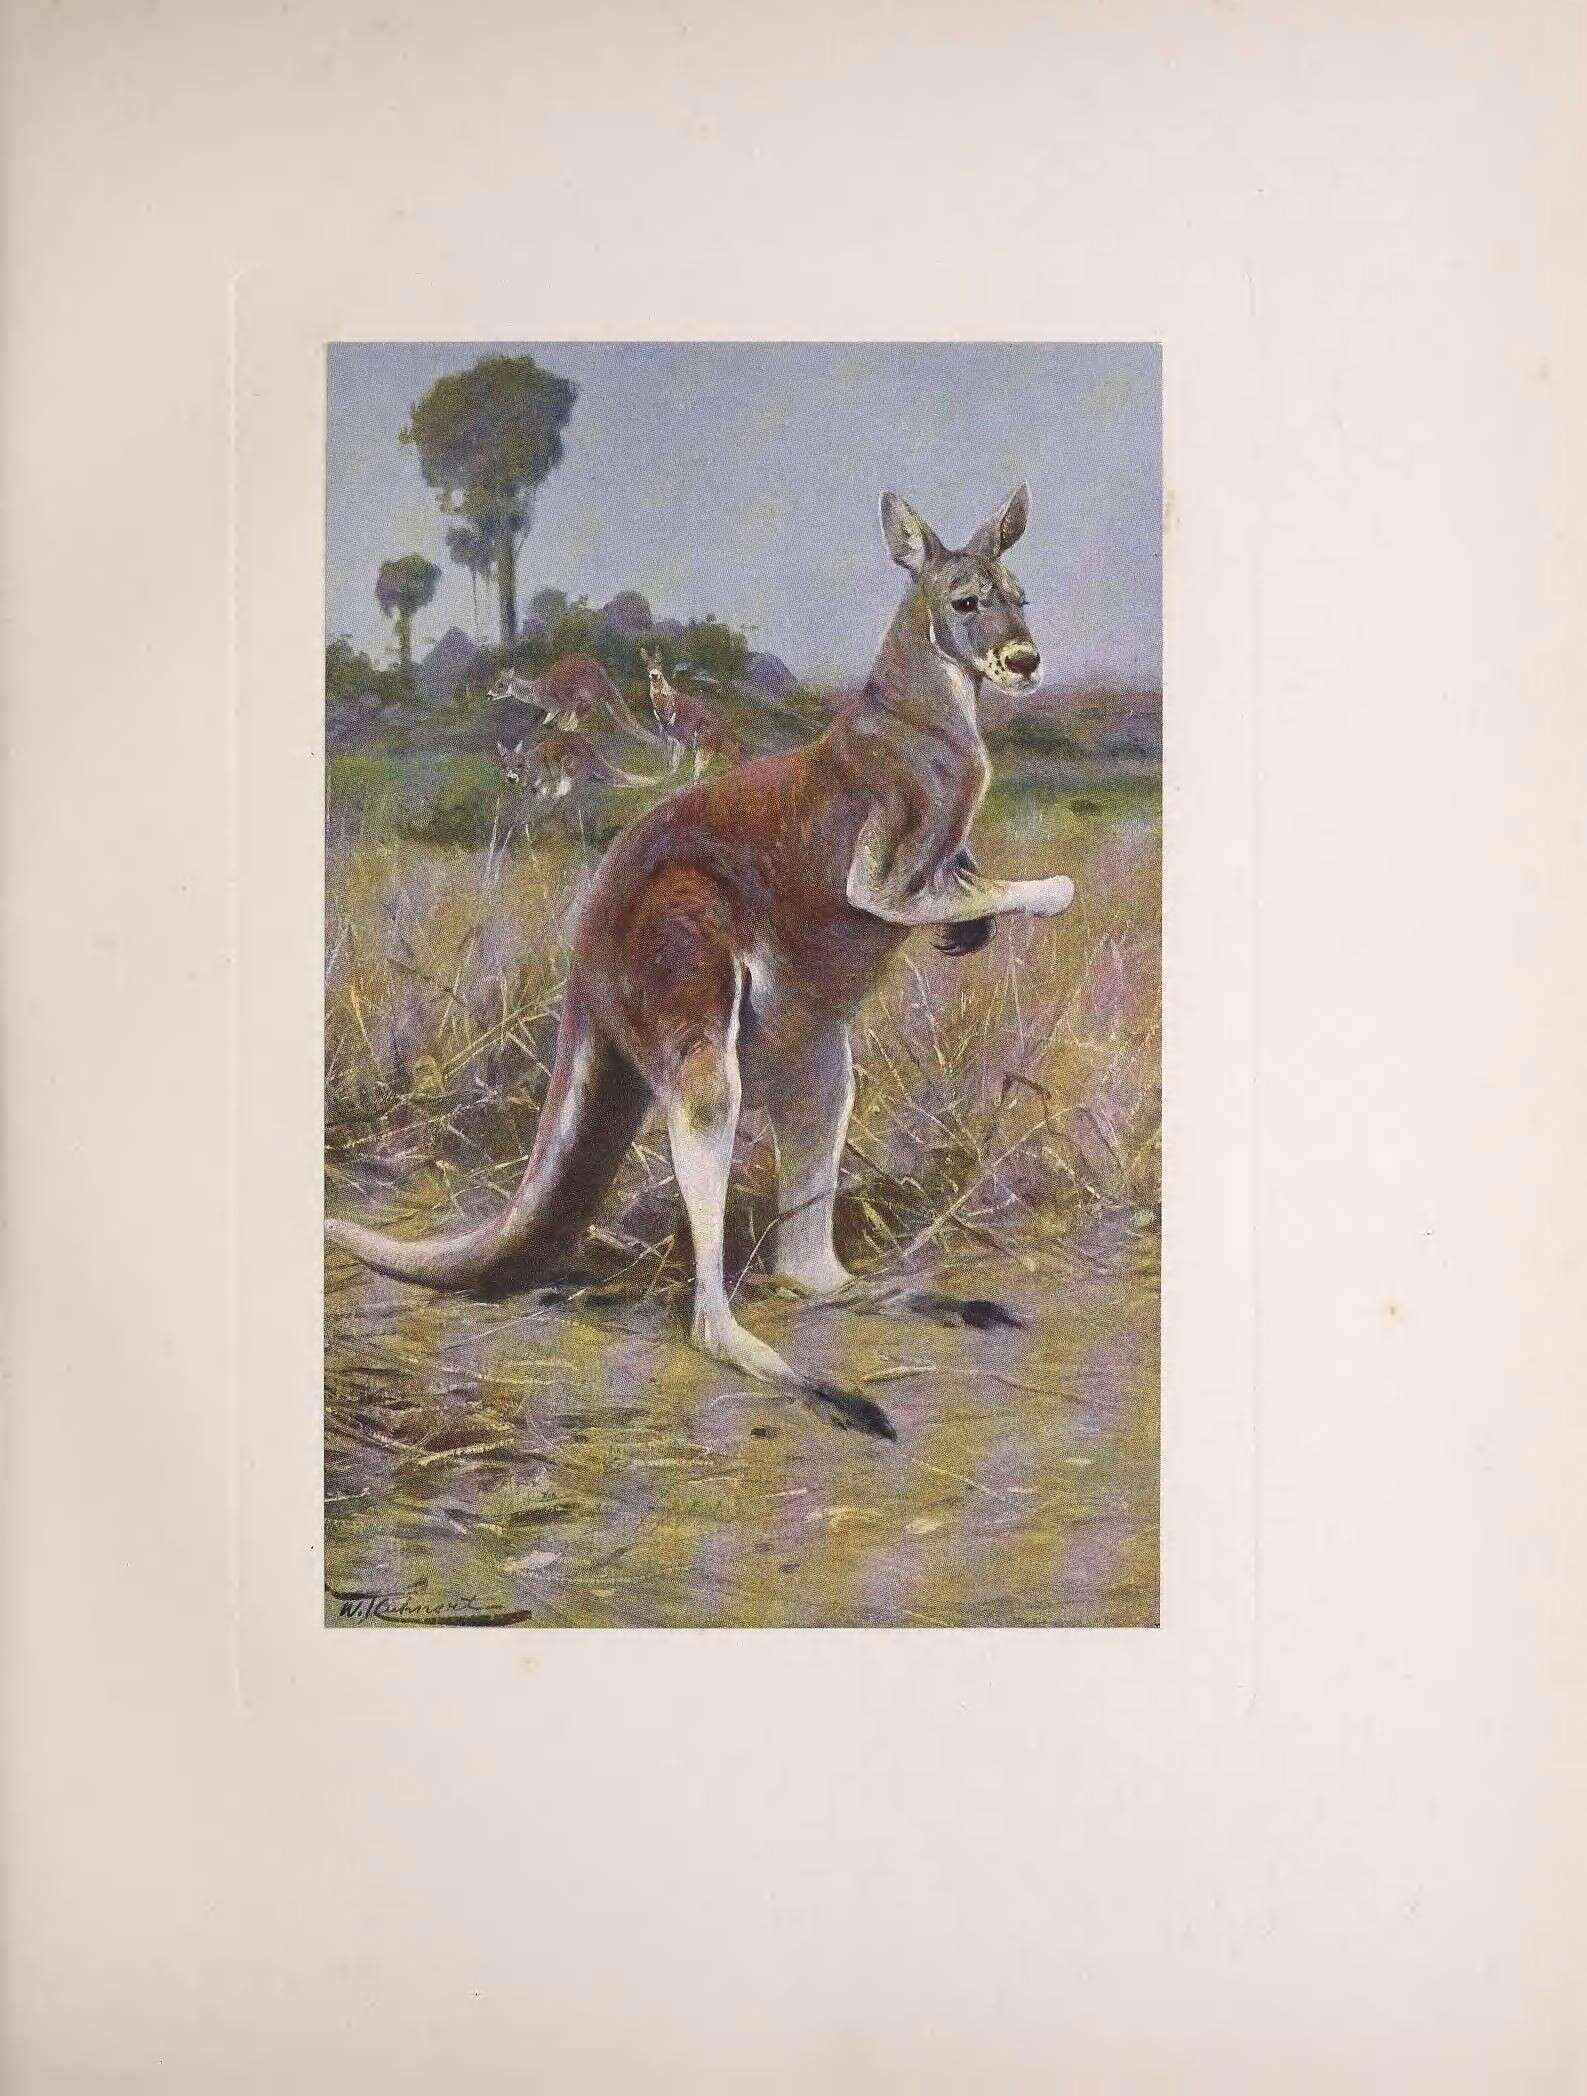 Image of Red kangaroo